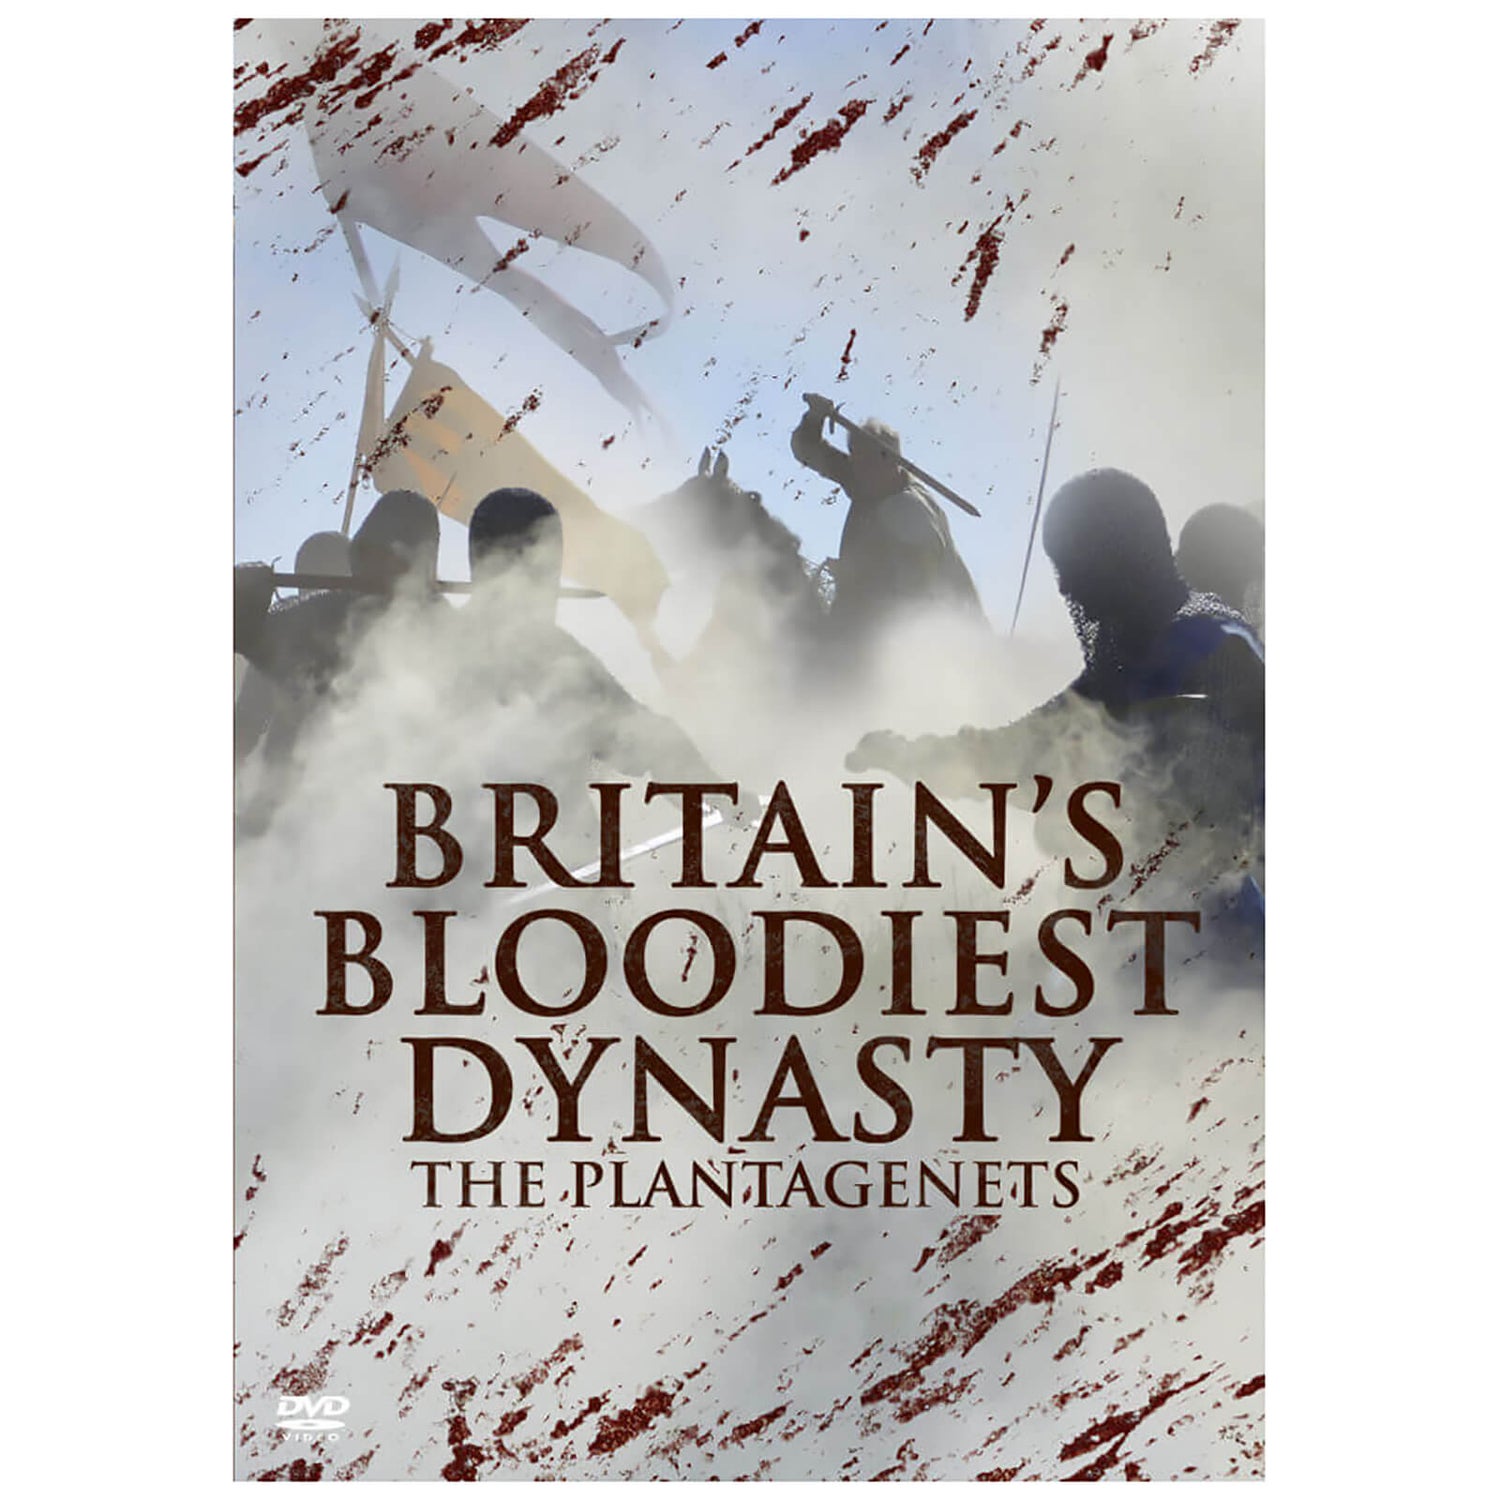 Die blutigste Dynastie Großbritanniens